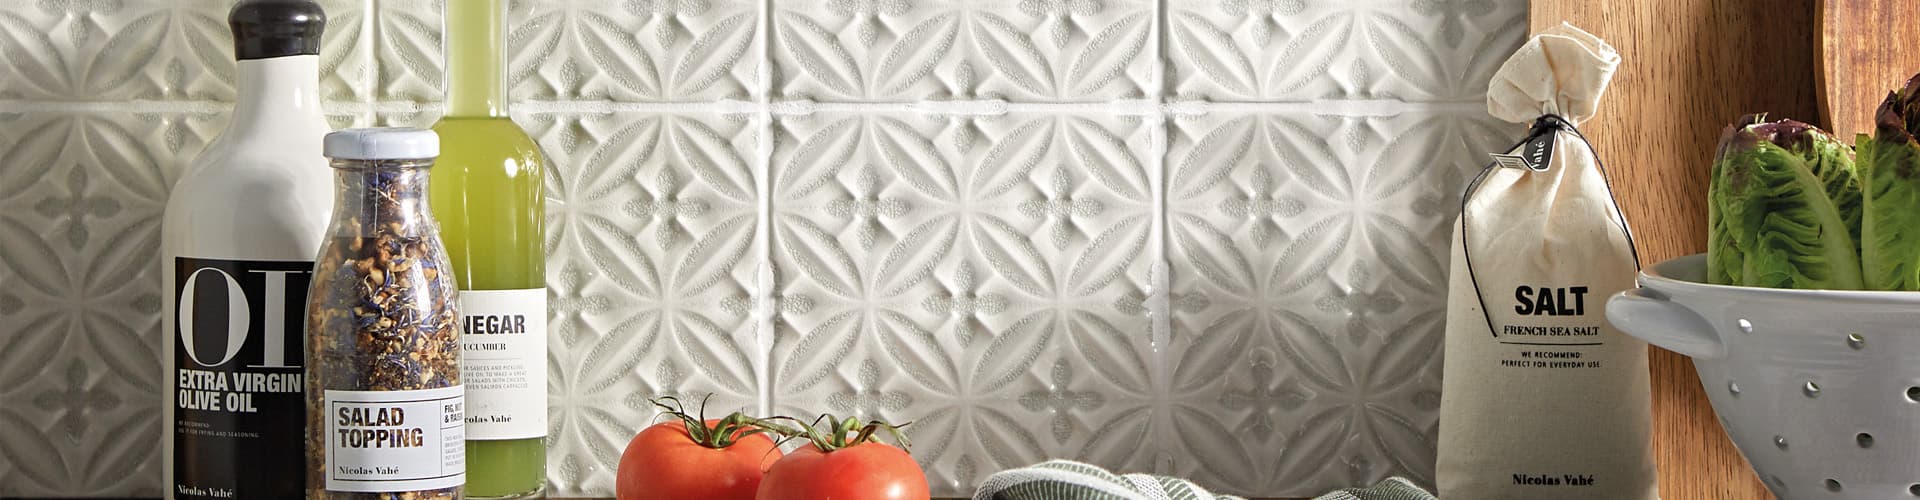 Decorative Kitchen Tiles